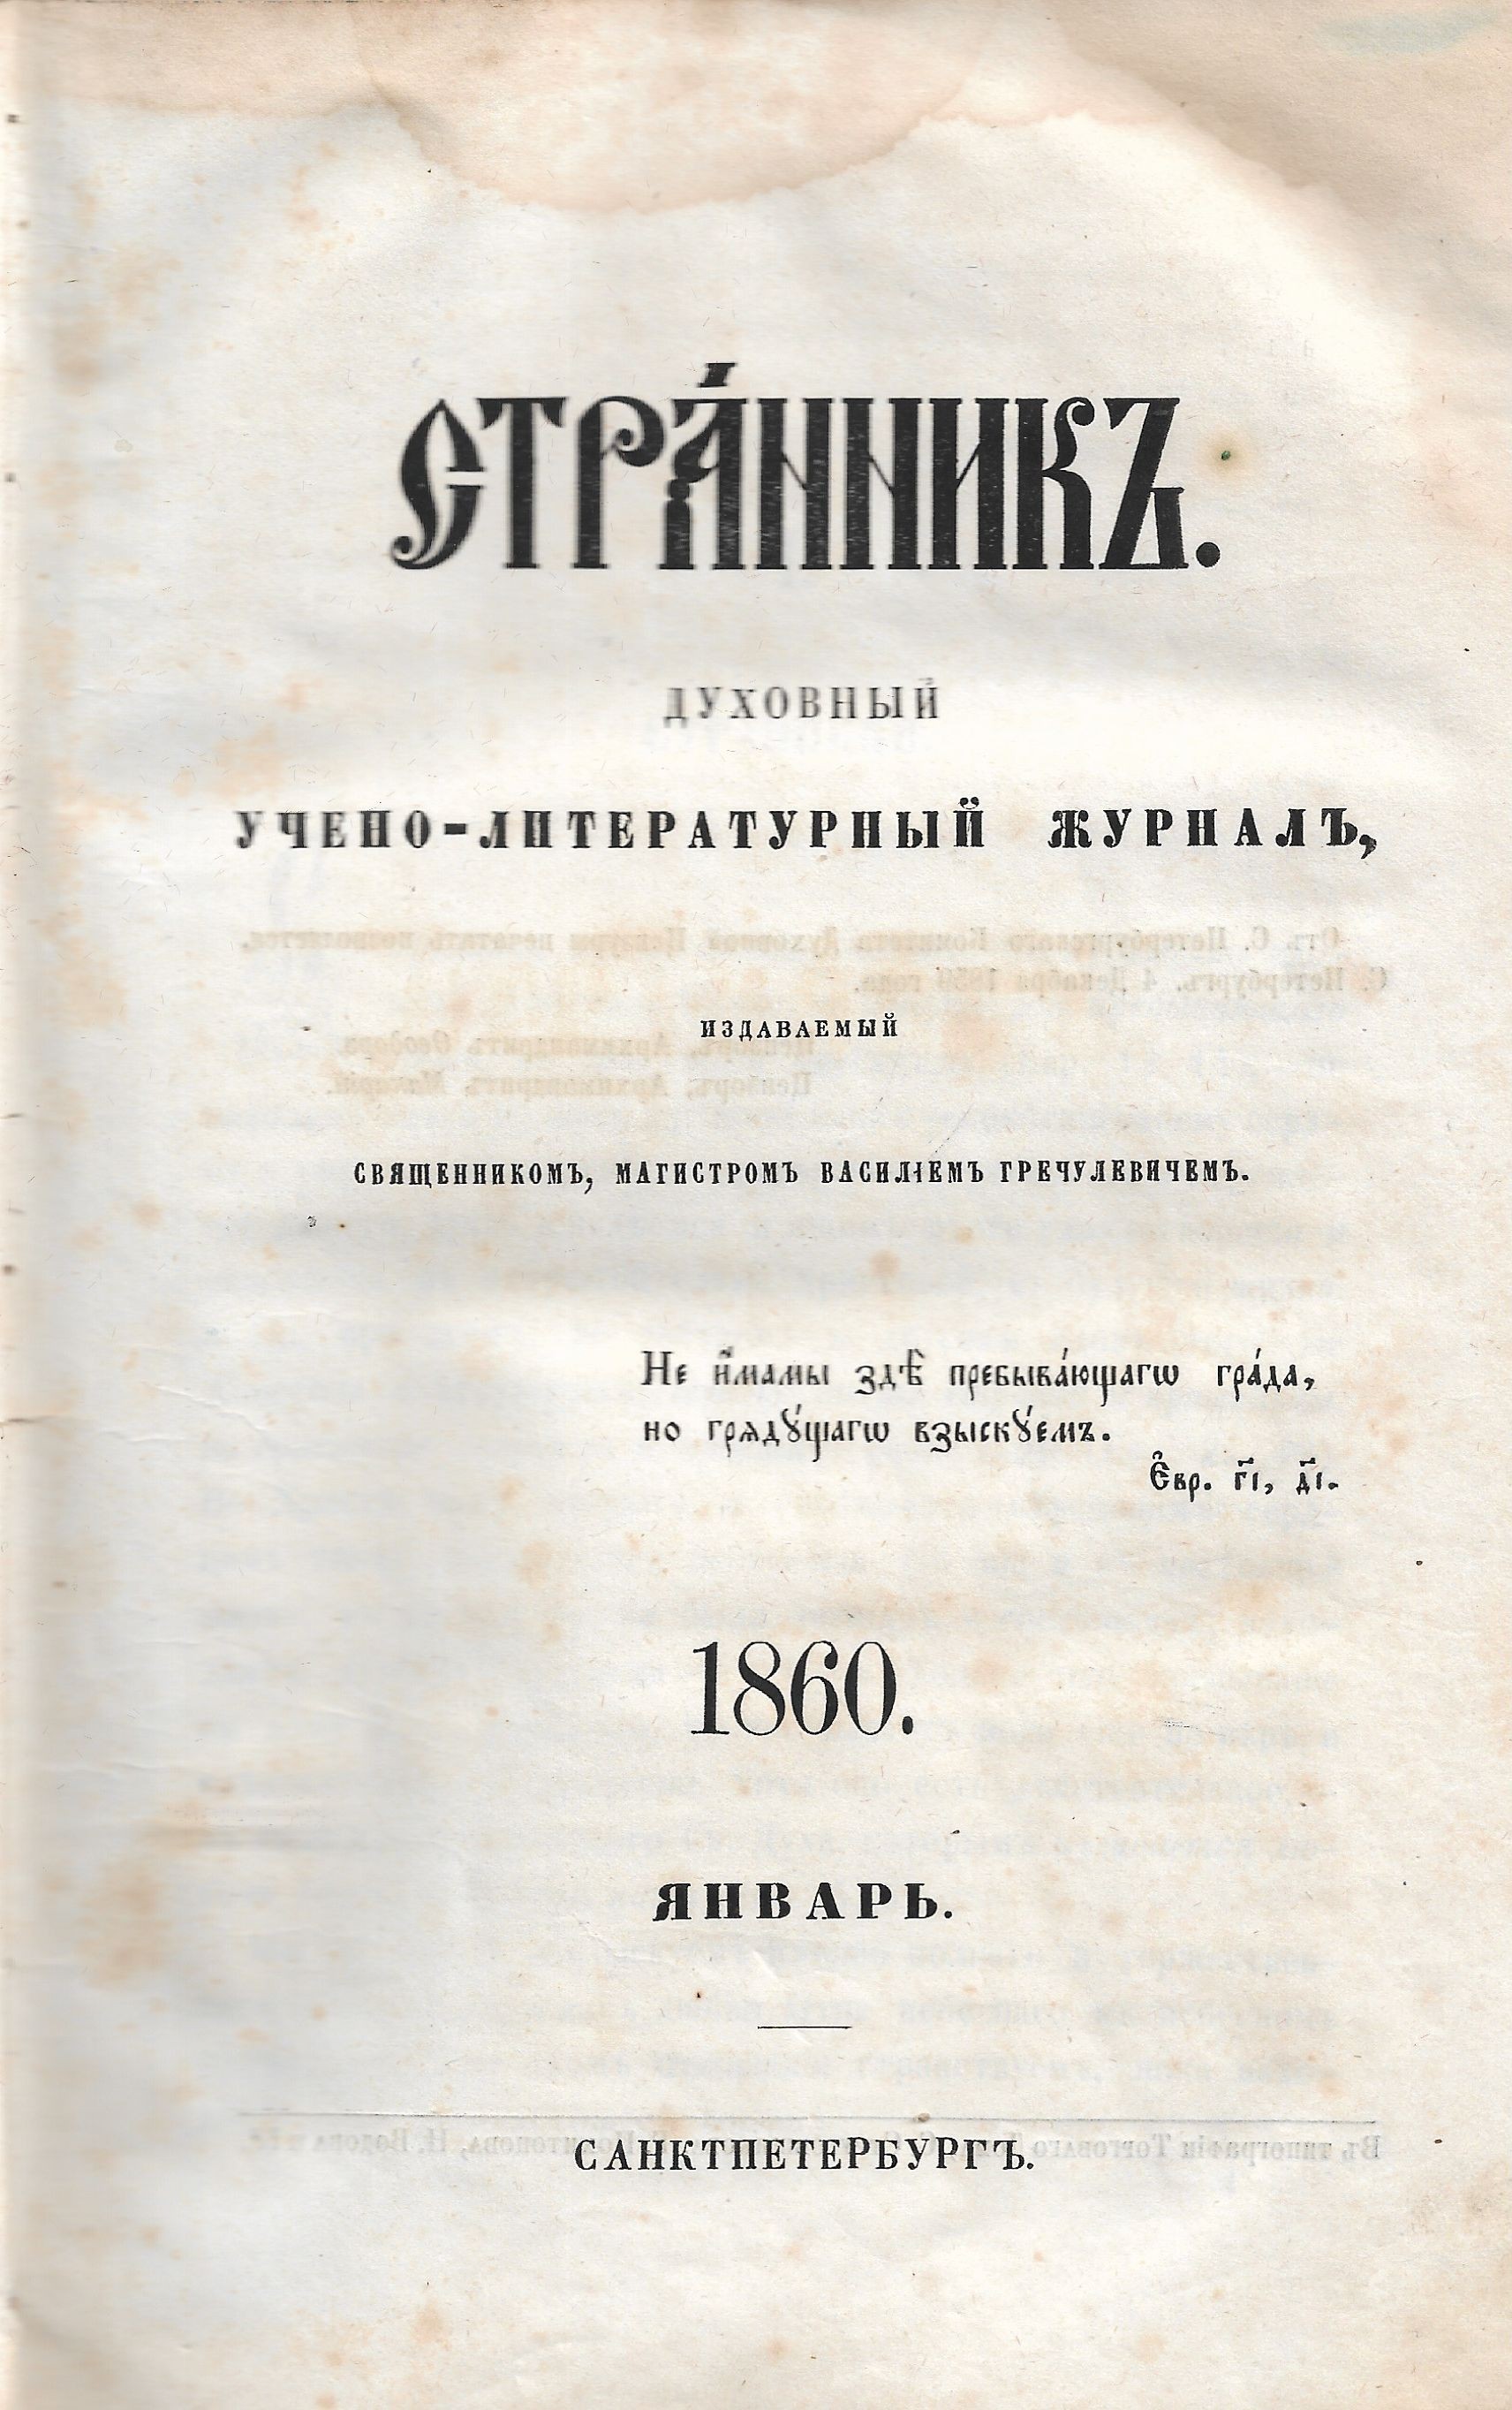 Обложка  первого выпуска журнала "Странникъ" за 1860 г.